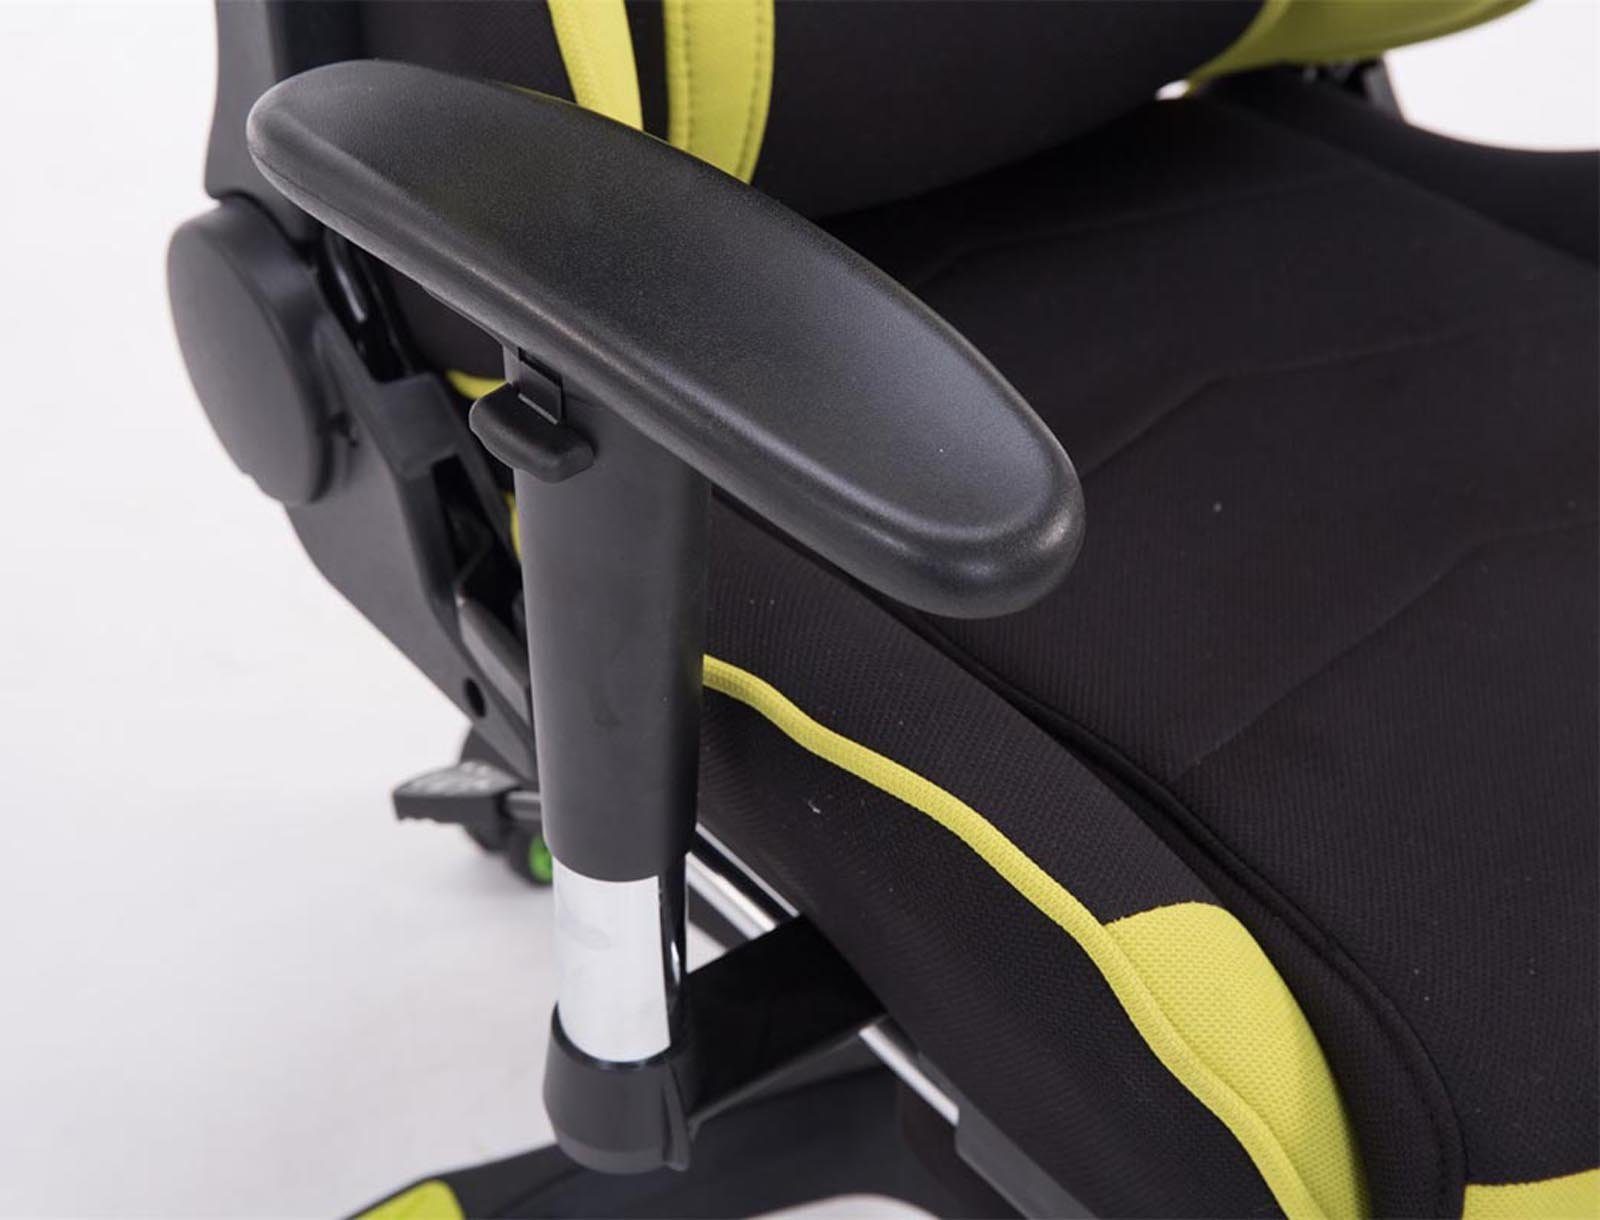 mit drehbar Chair Höhenverstellbar CLP und Turbo Gaming Fußablage,